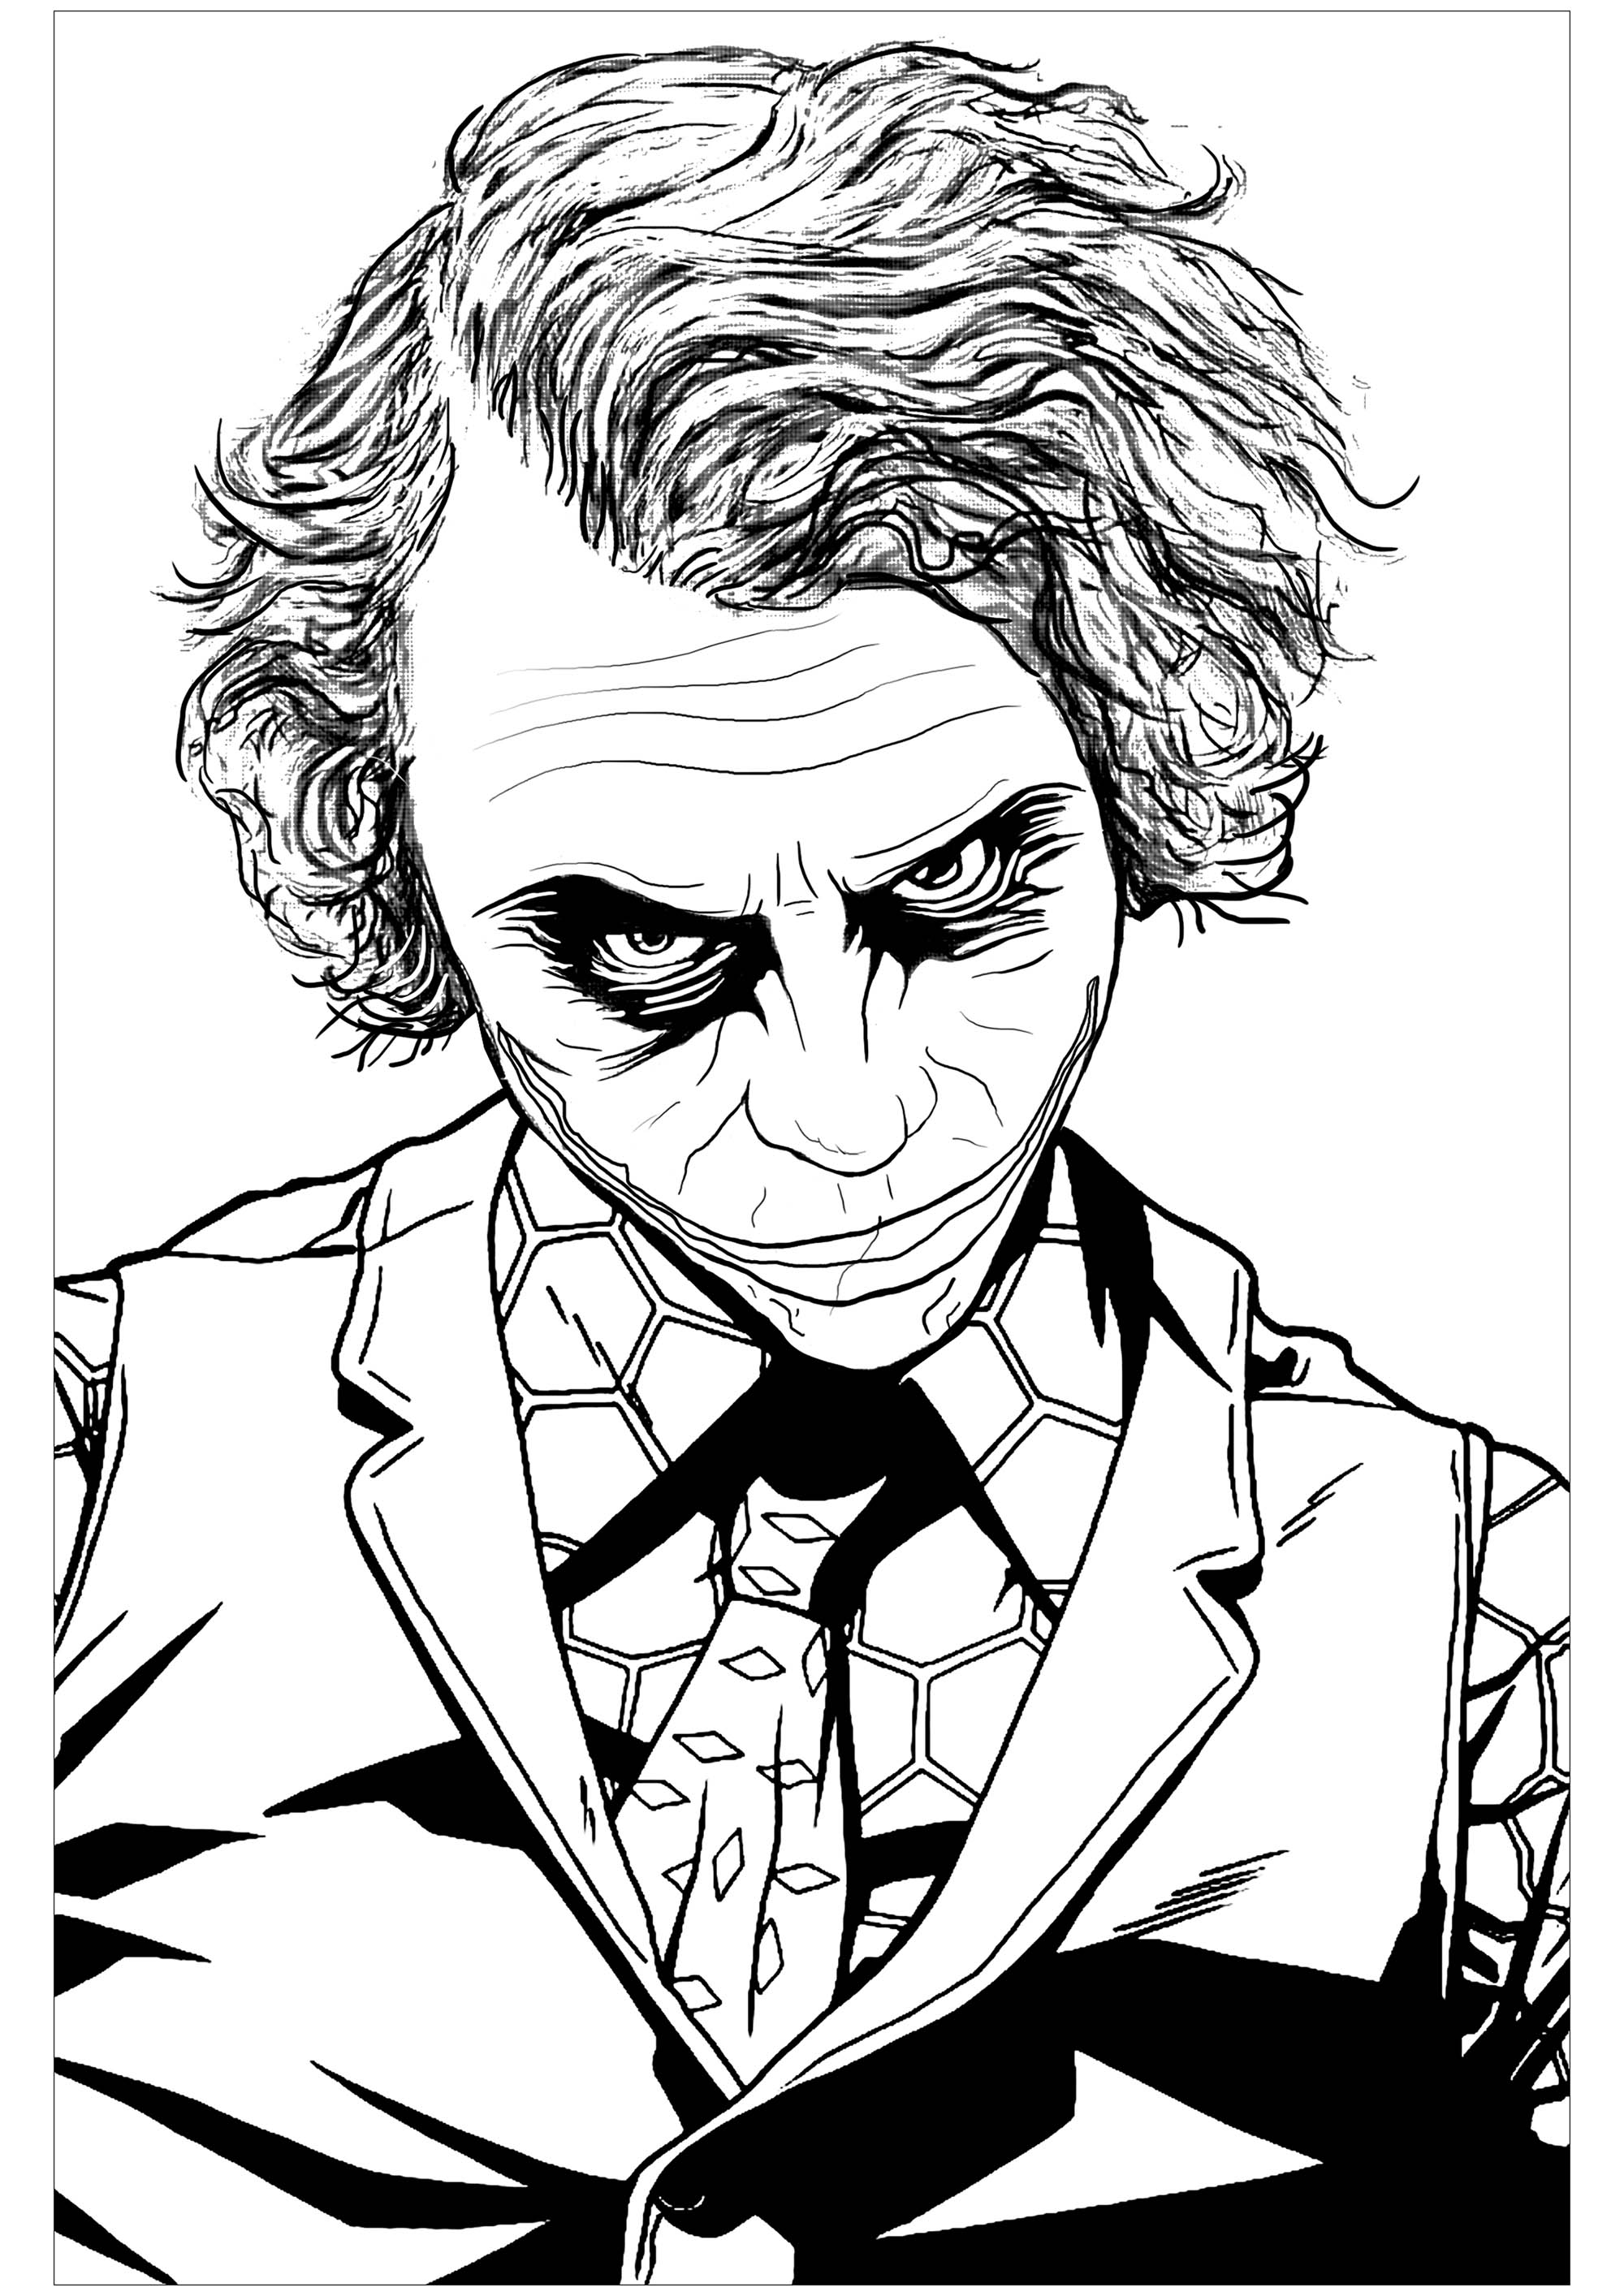 Página para colorir inspirada no infame vilão do Batman, o Joker, em 'O Cavaleiro das Trevas' (interpretado por Heath Ledger), Artista : Art'Isabelle